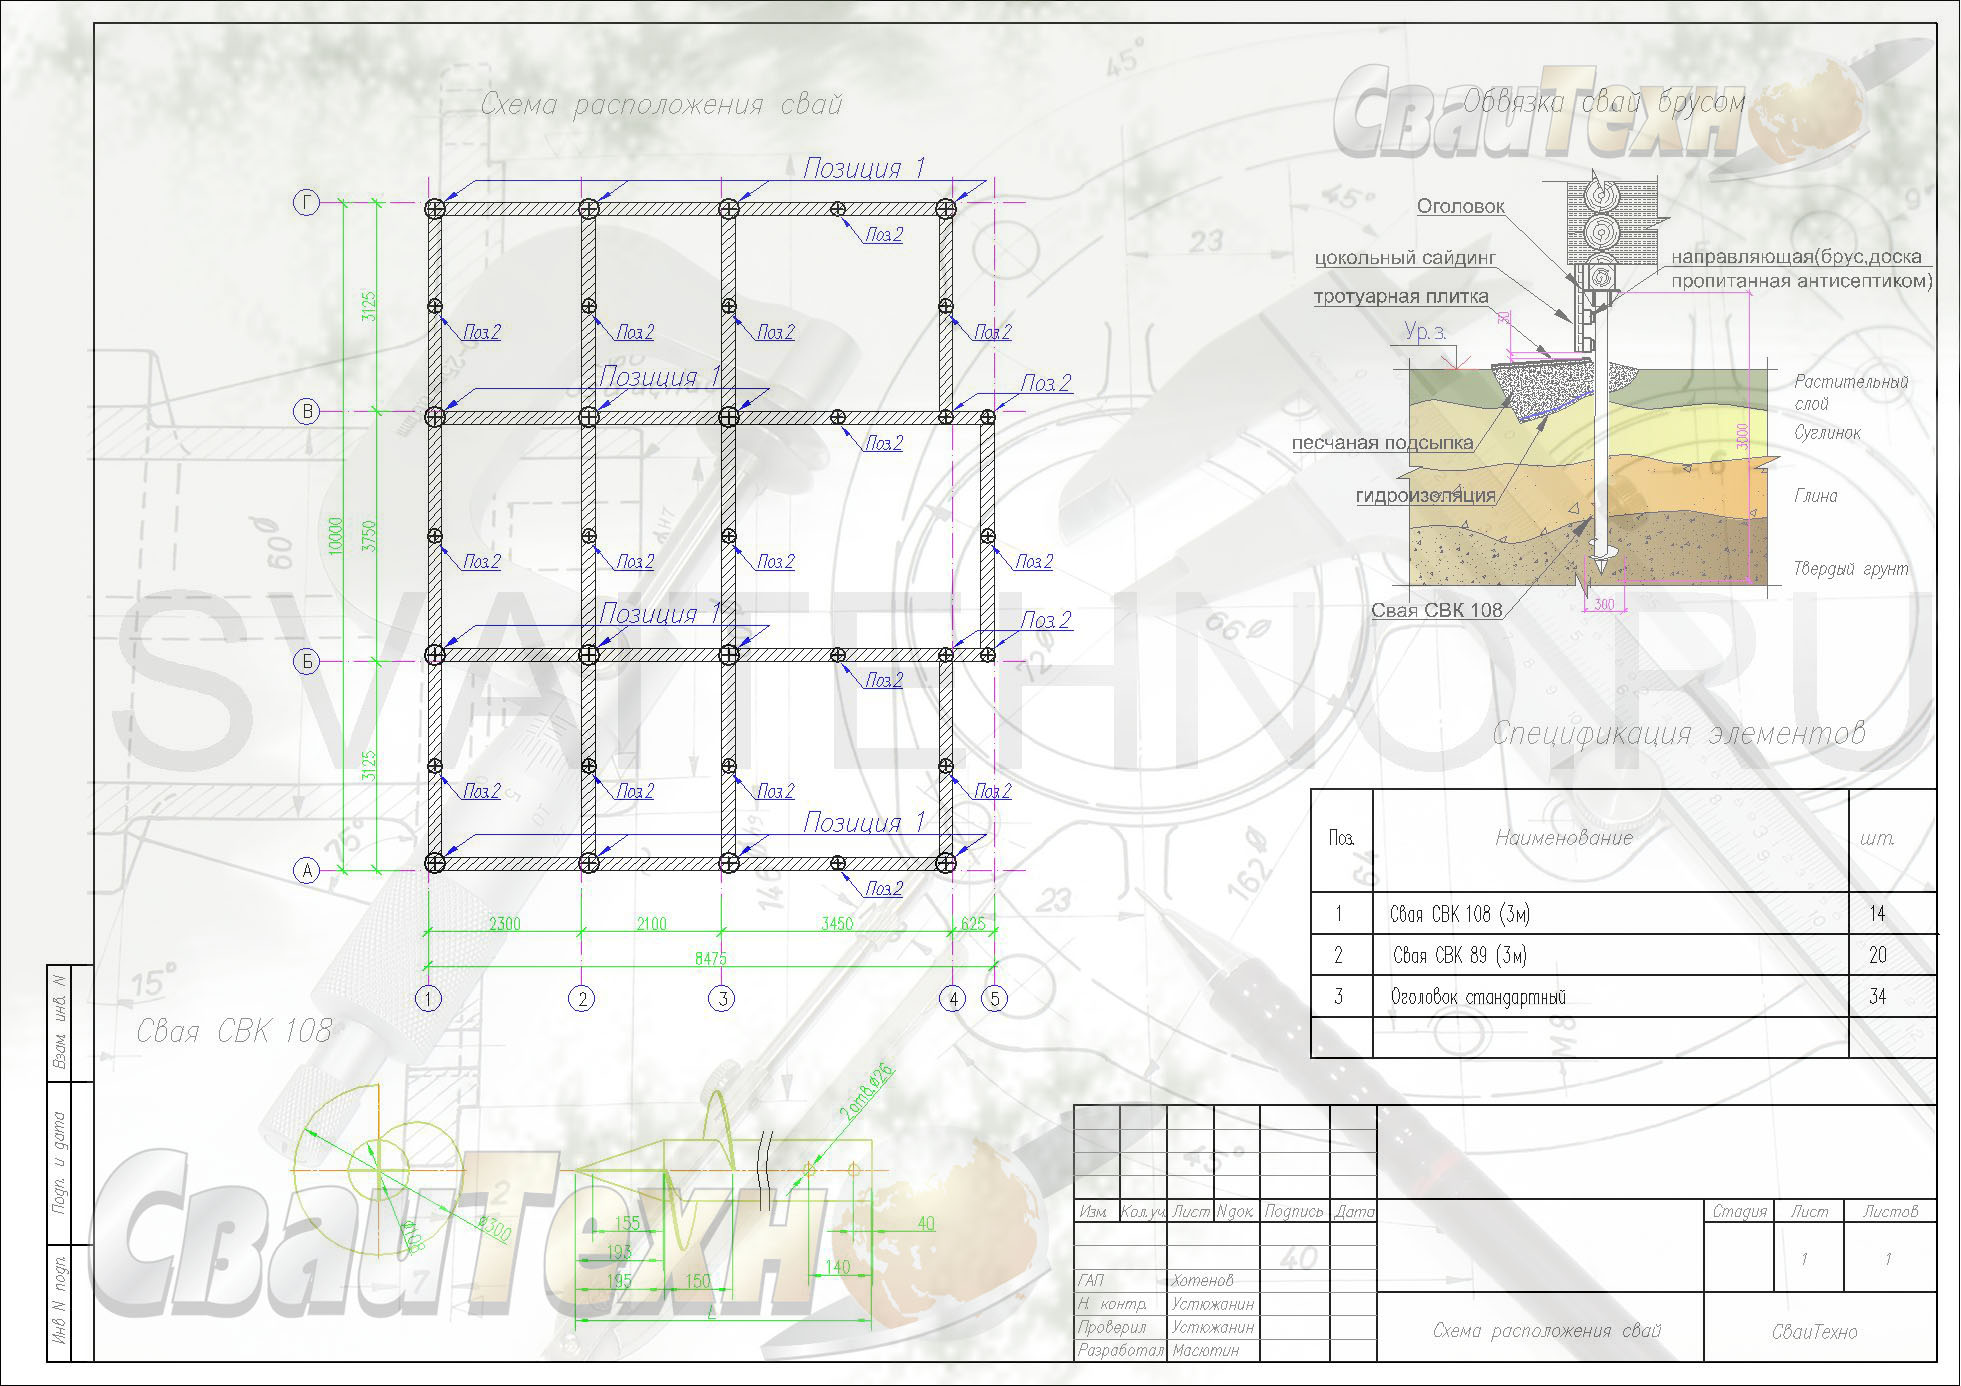 Схема расположения свай для строительства двухэтажного жилого дома